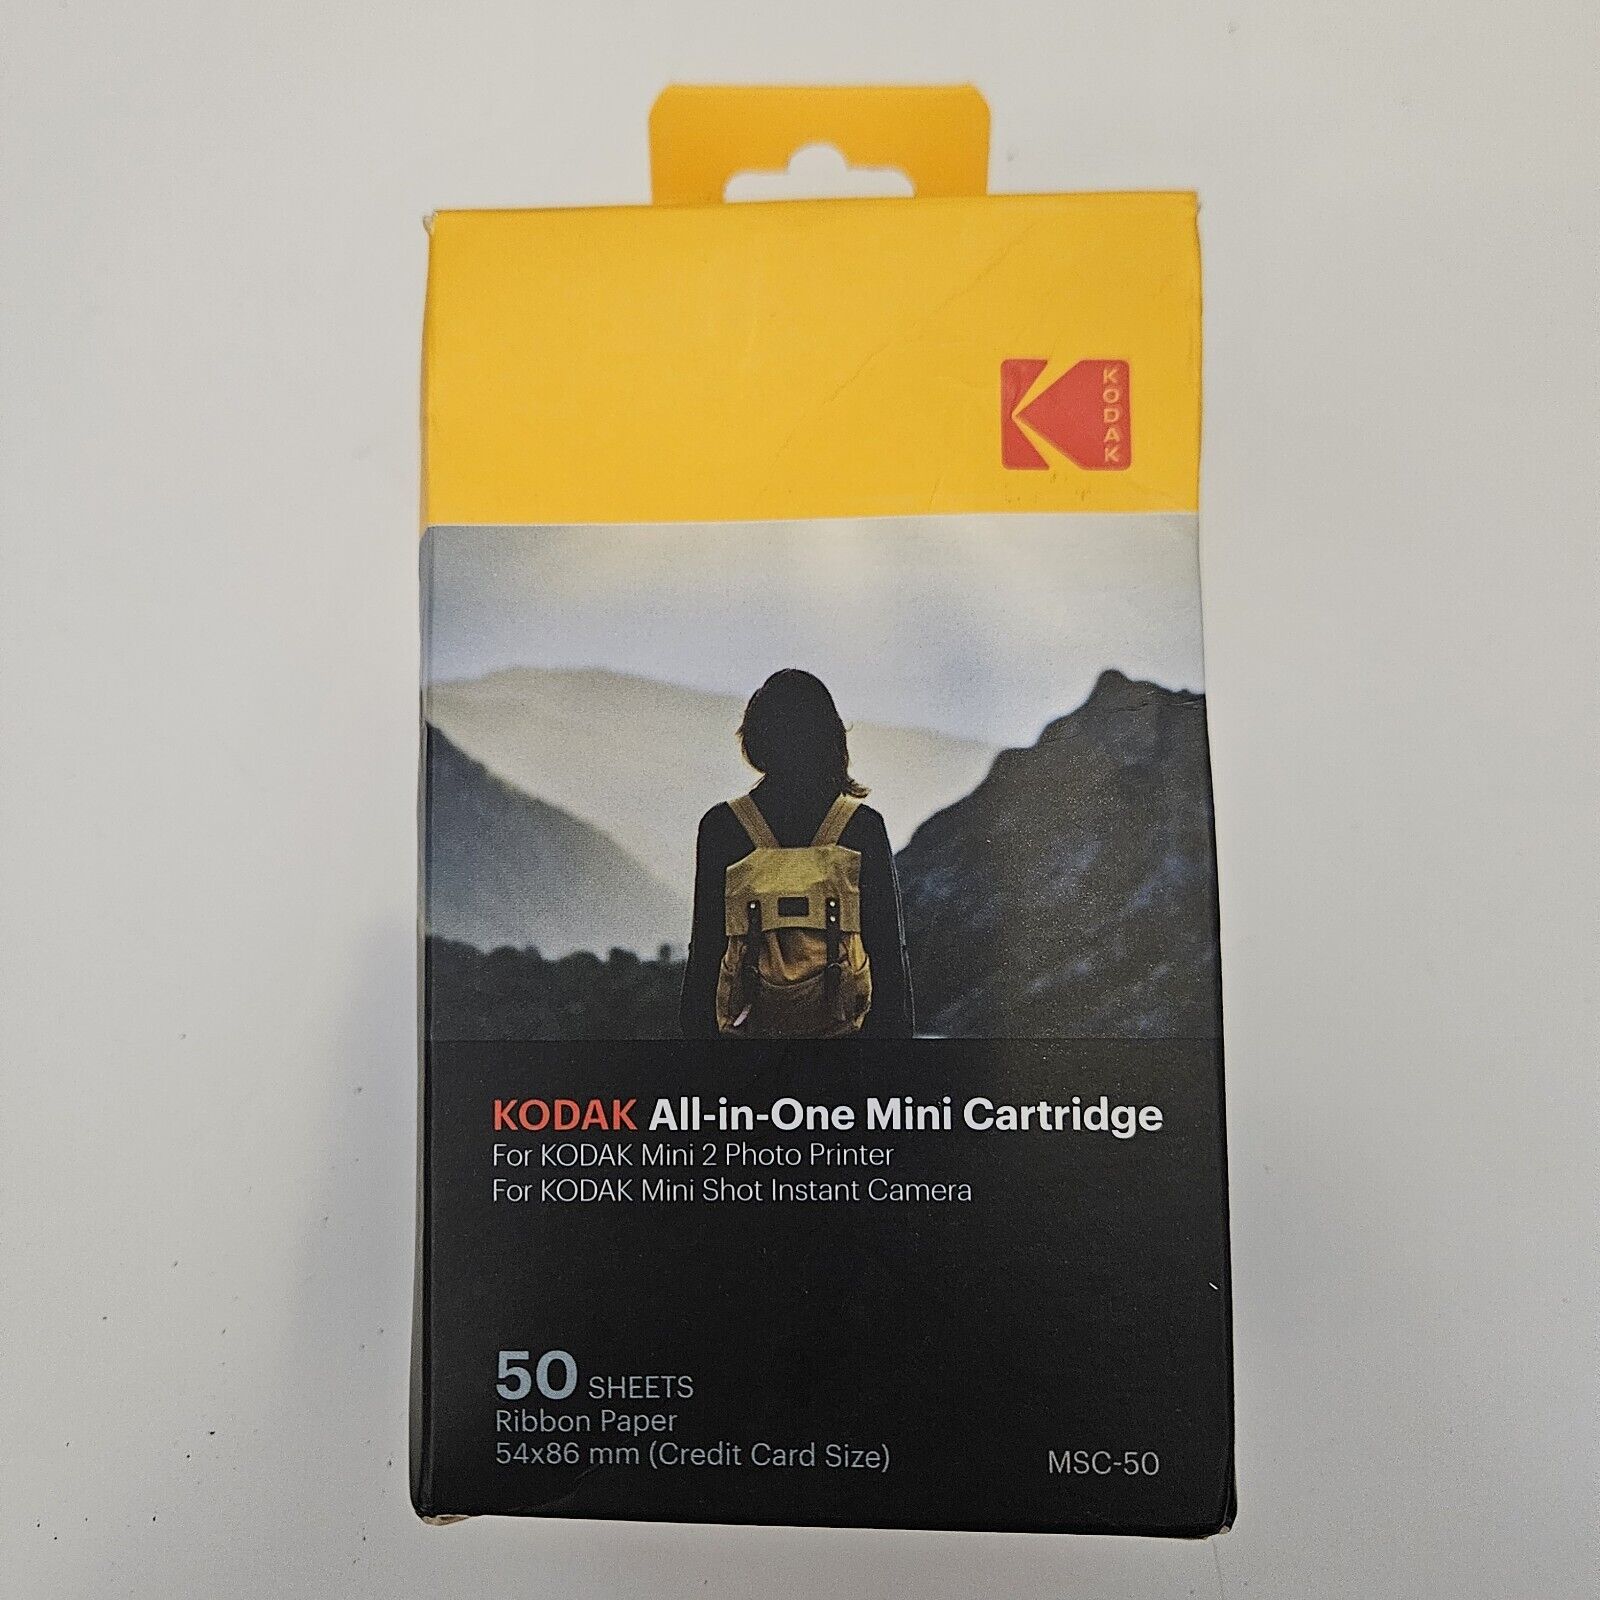 Kodak All-In-One Mini Cartridge 50 Sheets Ribbon Paper 54x86 Credit Card Size